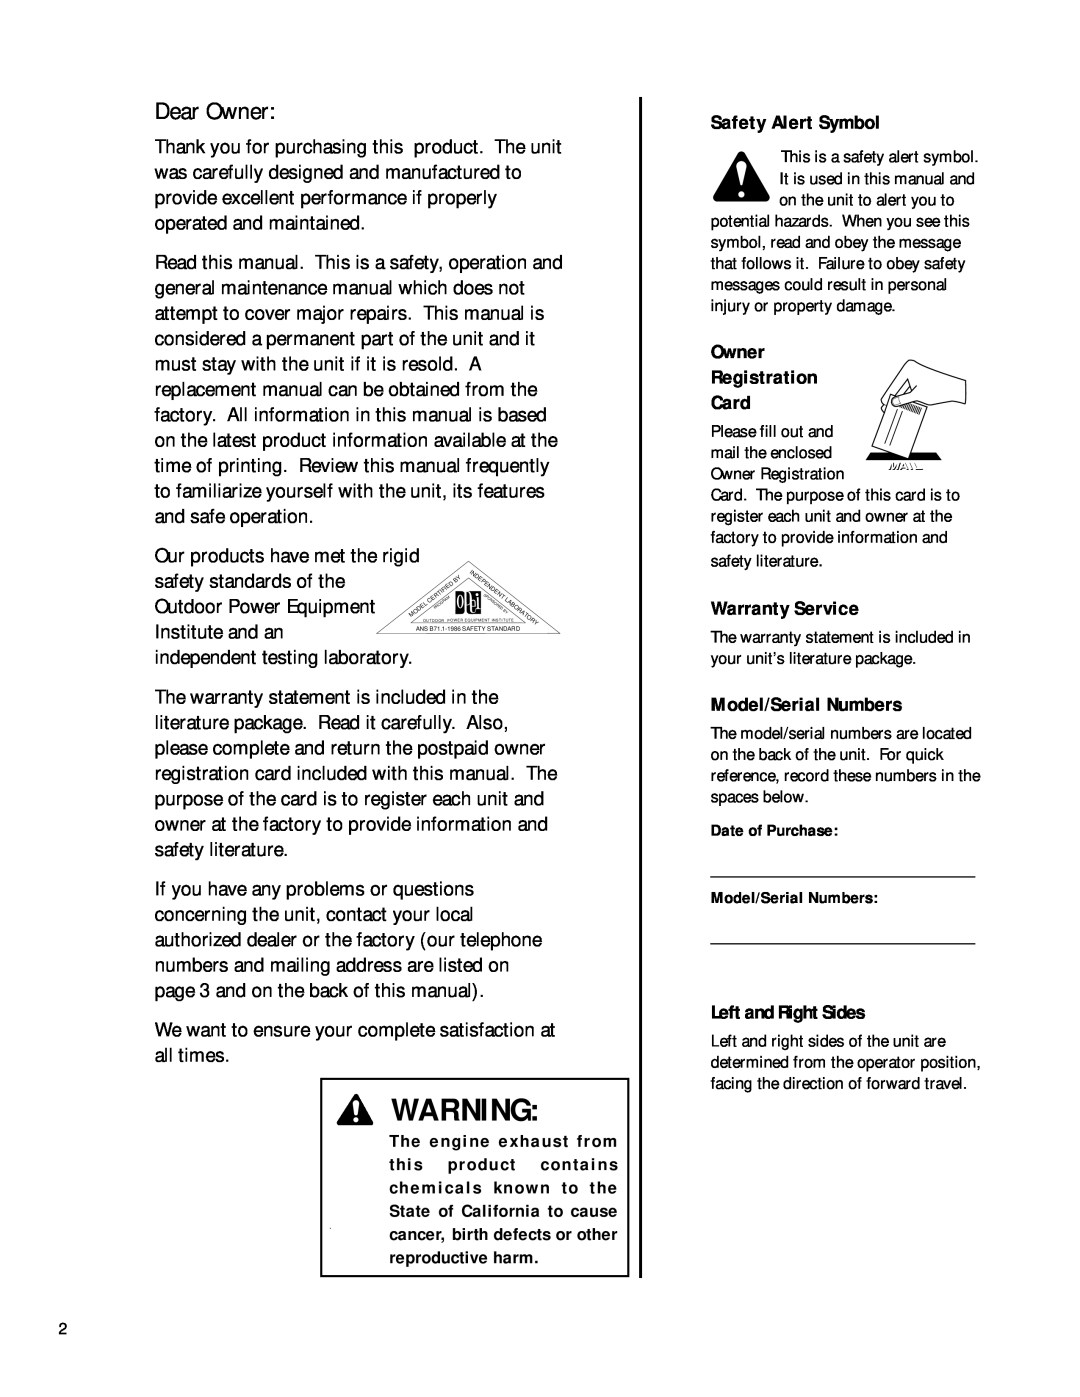 Troy-Bilt 42010 Safety Alert Symbol, Owner Registration Card, Warranty Service, Model/Serial Numbers, Left and Right Sides 